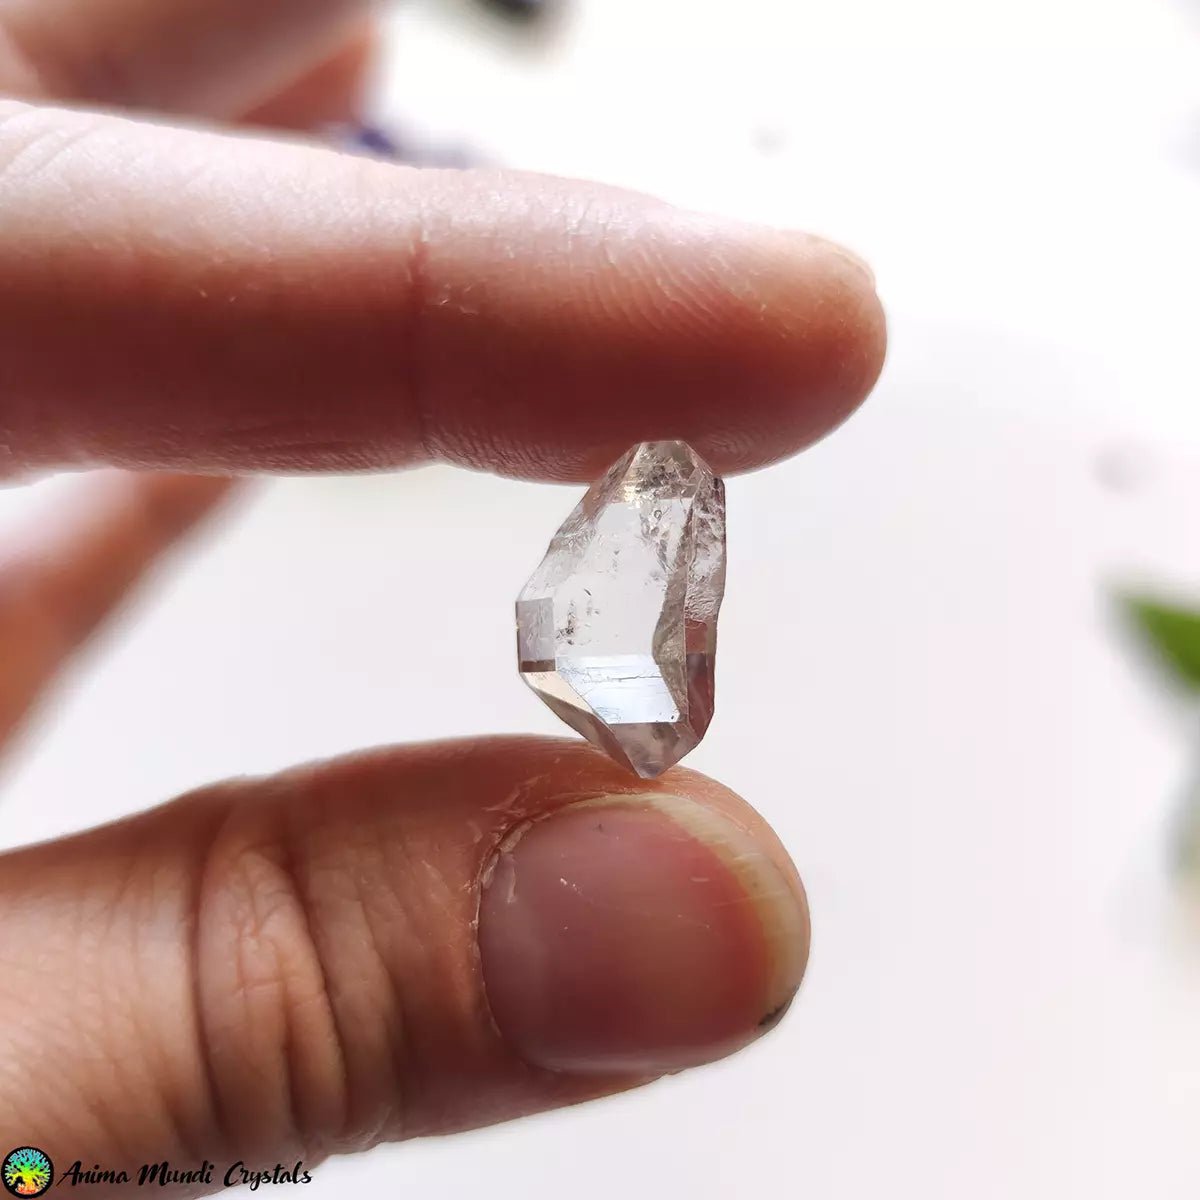 "Herkimer" de 19 mm con cuarzo diamante de inclusión fluida - Cristales Anima Mundi